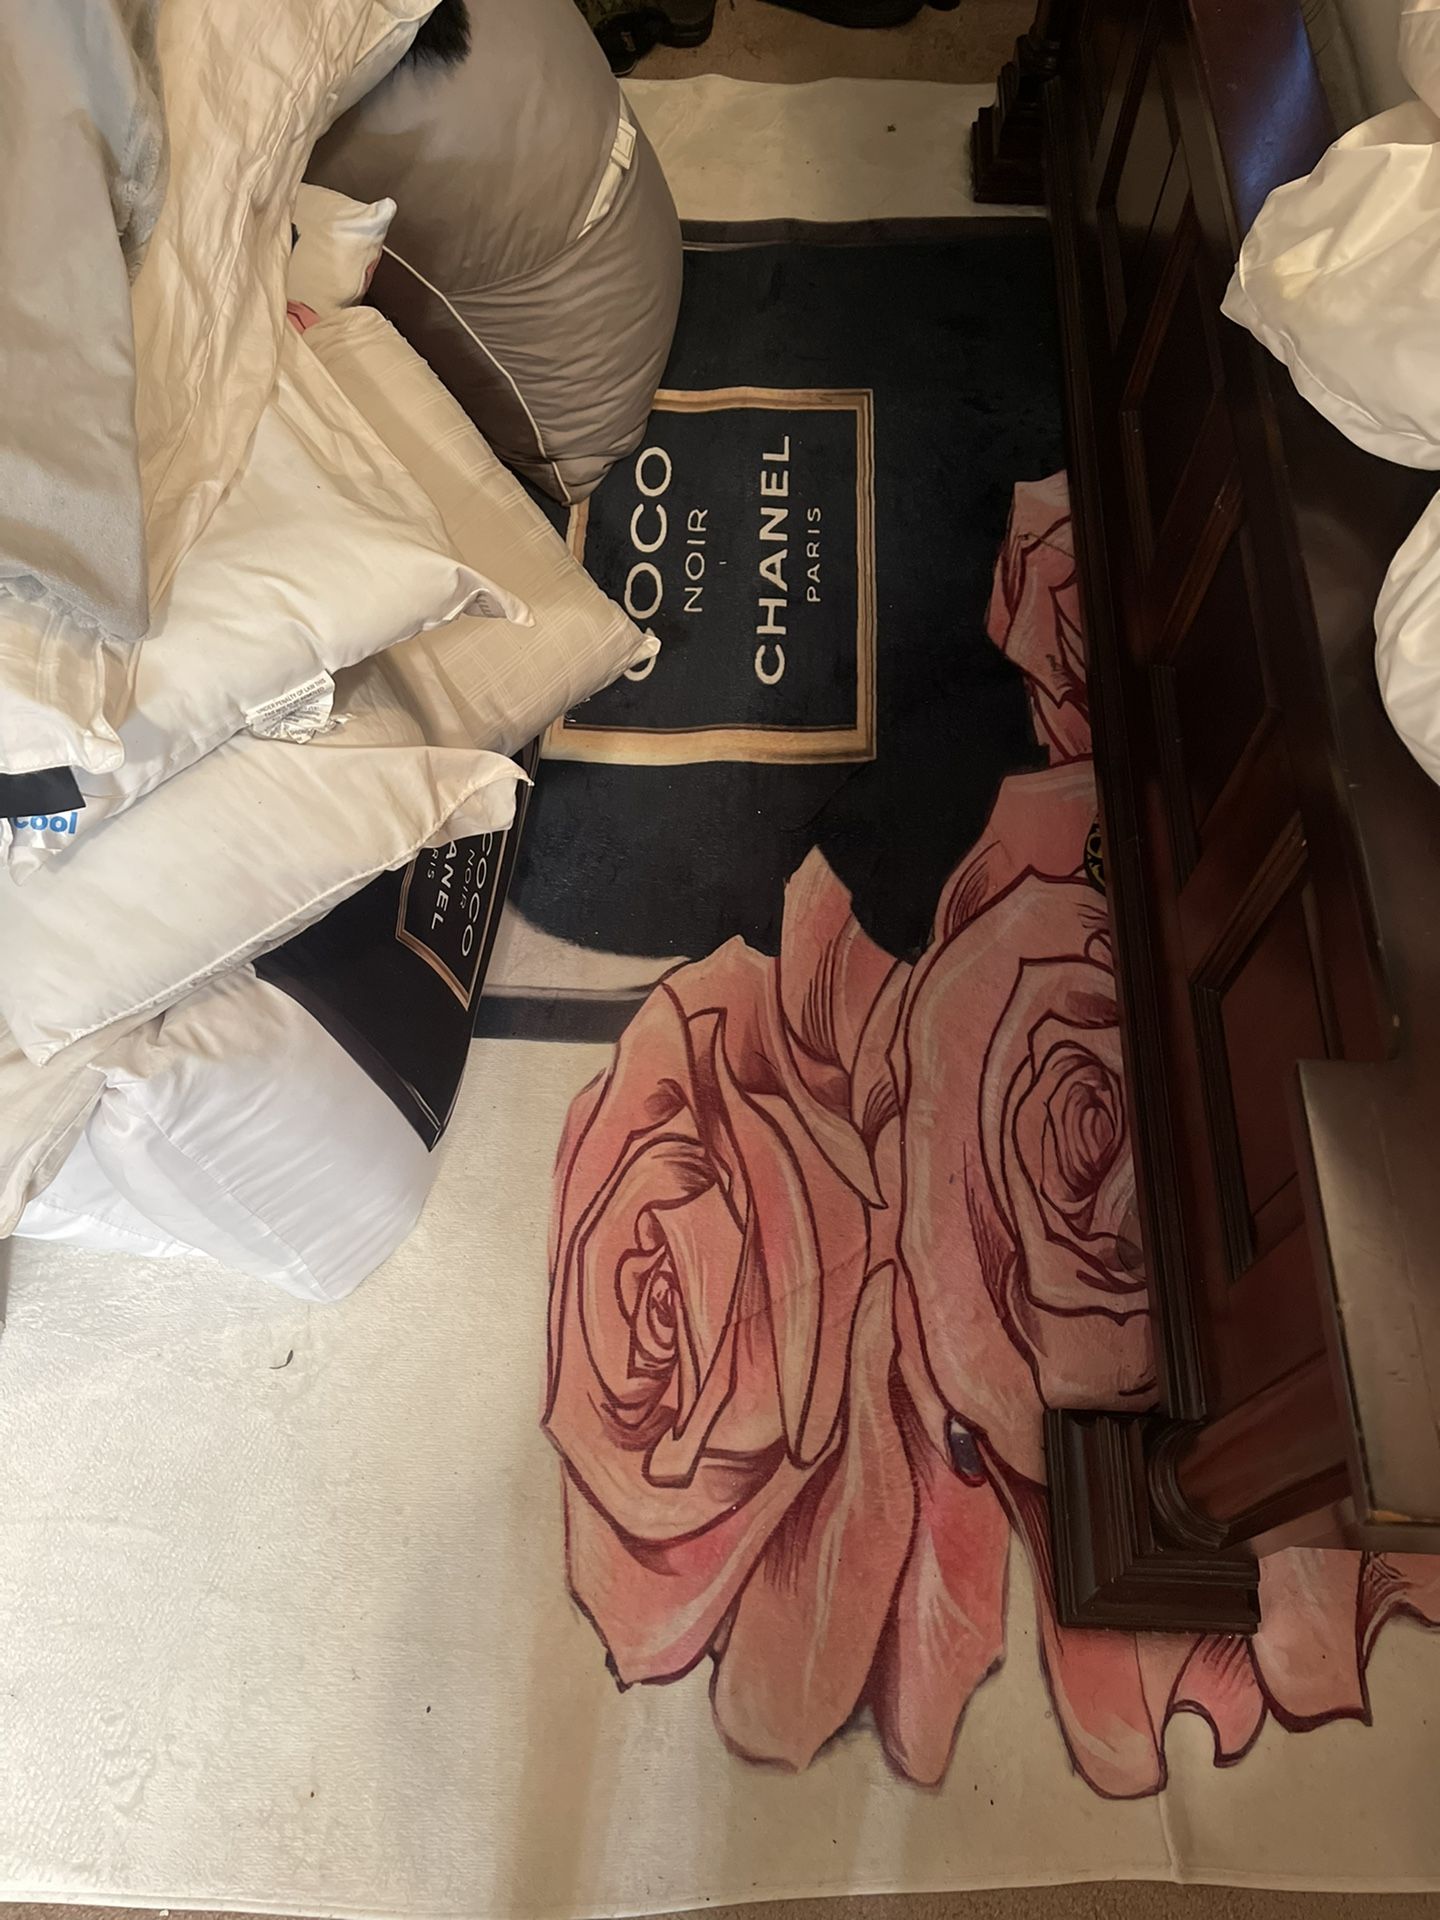 Chanel Bathroom set - so in love 🖤🤍 Price - N17,000 #Homedecor